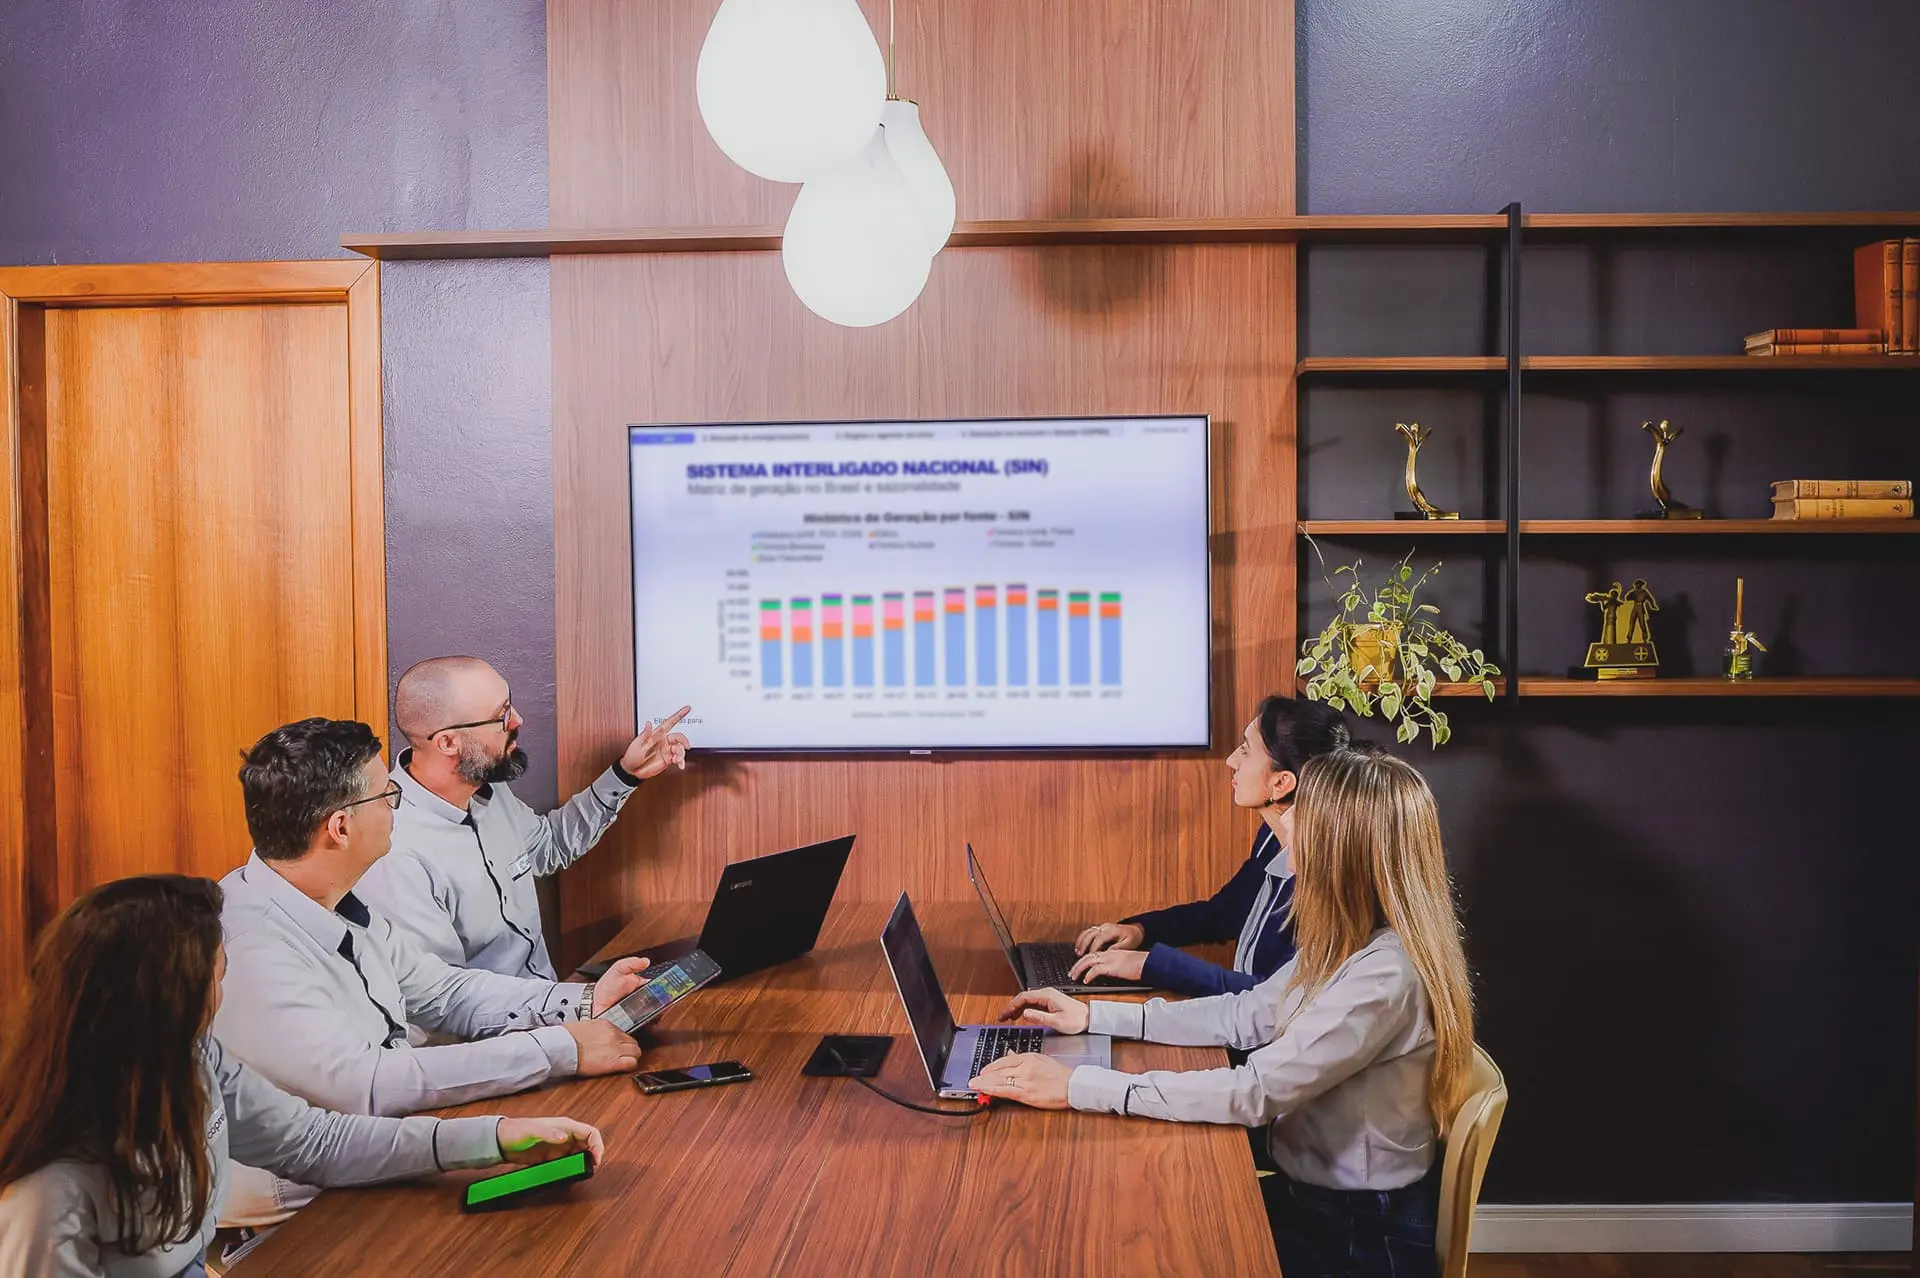 Grupo de pessoas em sala de reuniões analisando resultados em um gráfico exposto em uma televisão